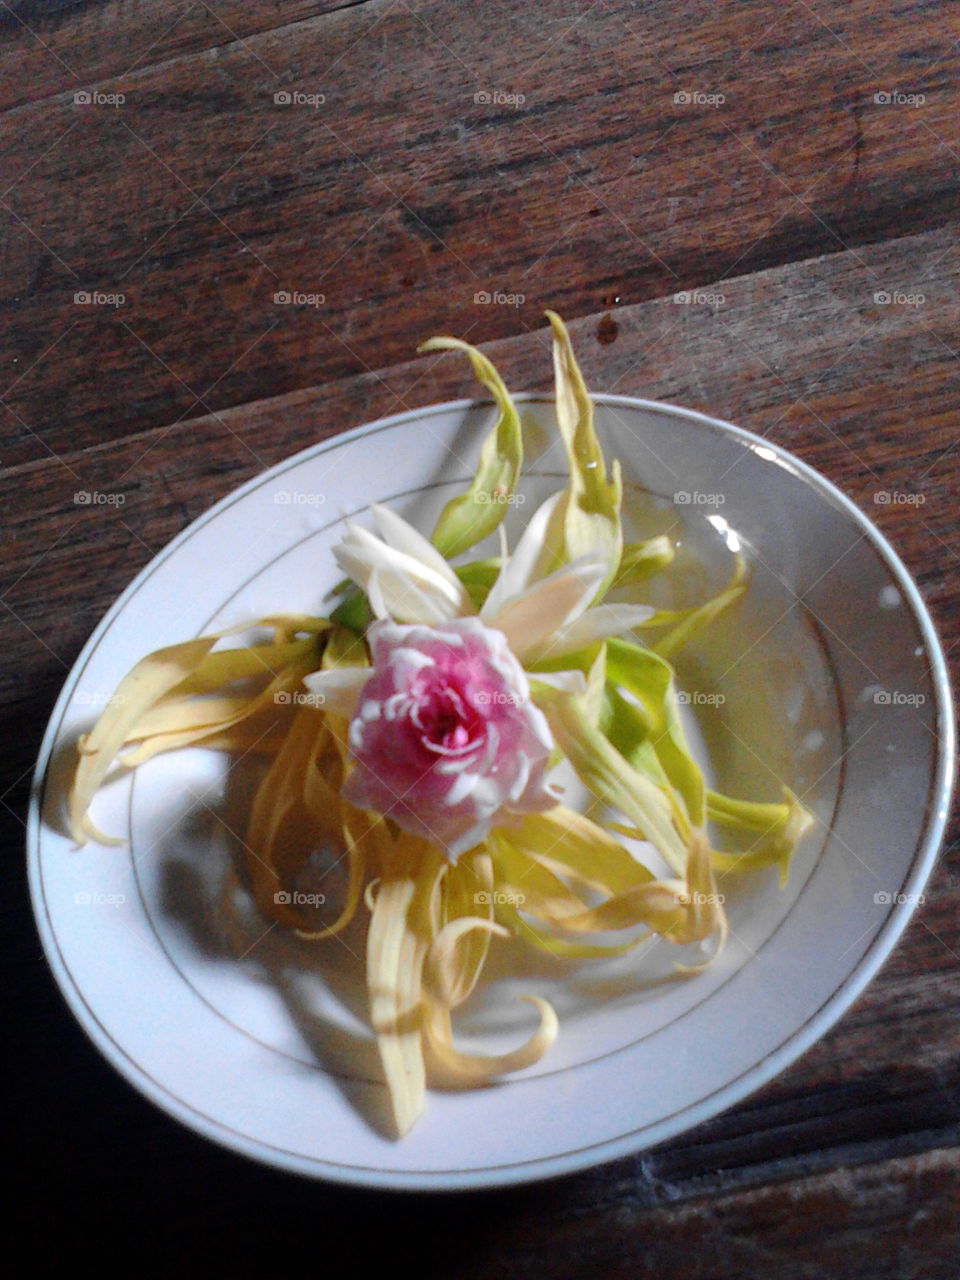 flower in plate